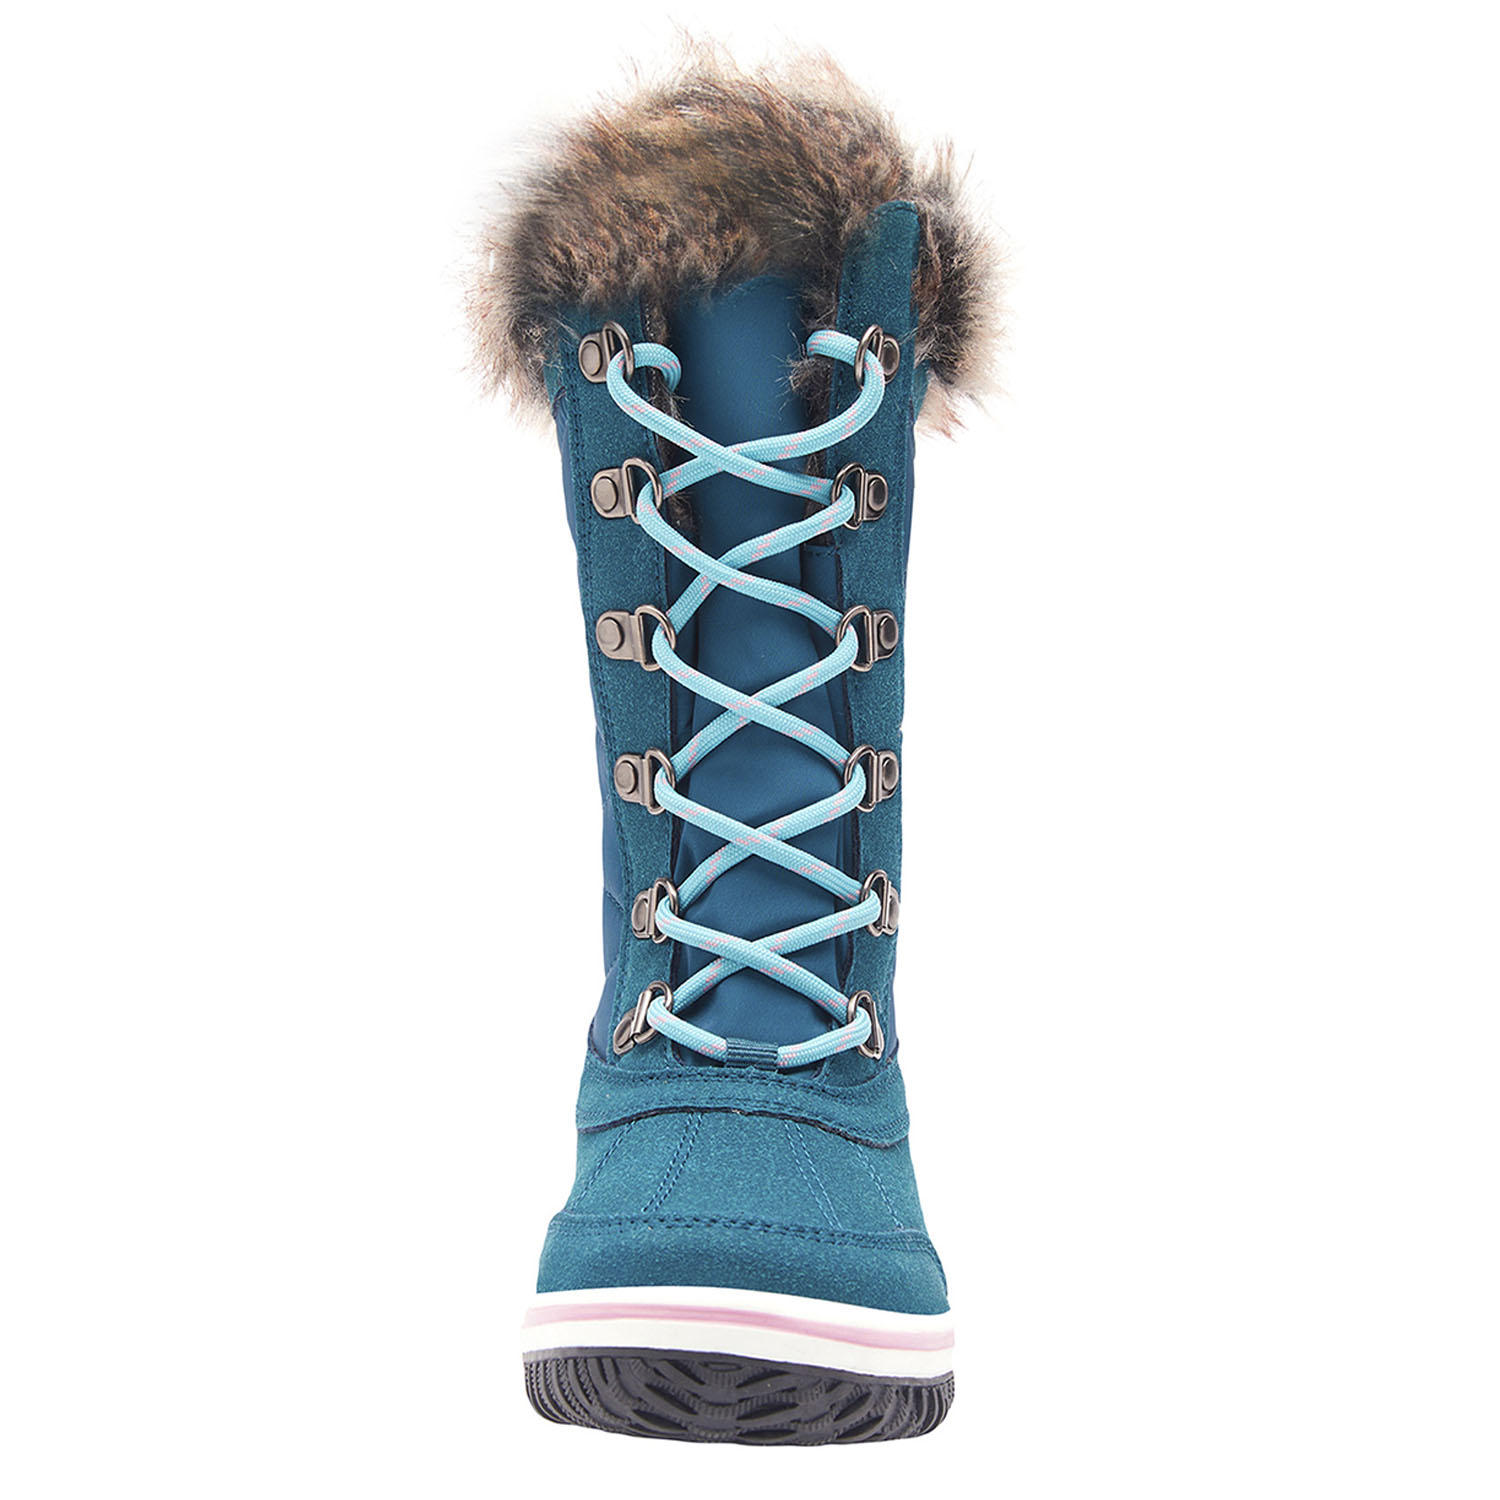 Ботинки детские Trollkids Girls Holmenkollen Snow Boots Teal/Aqua